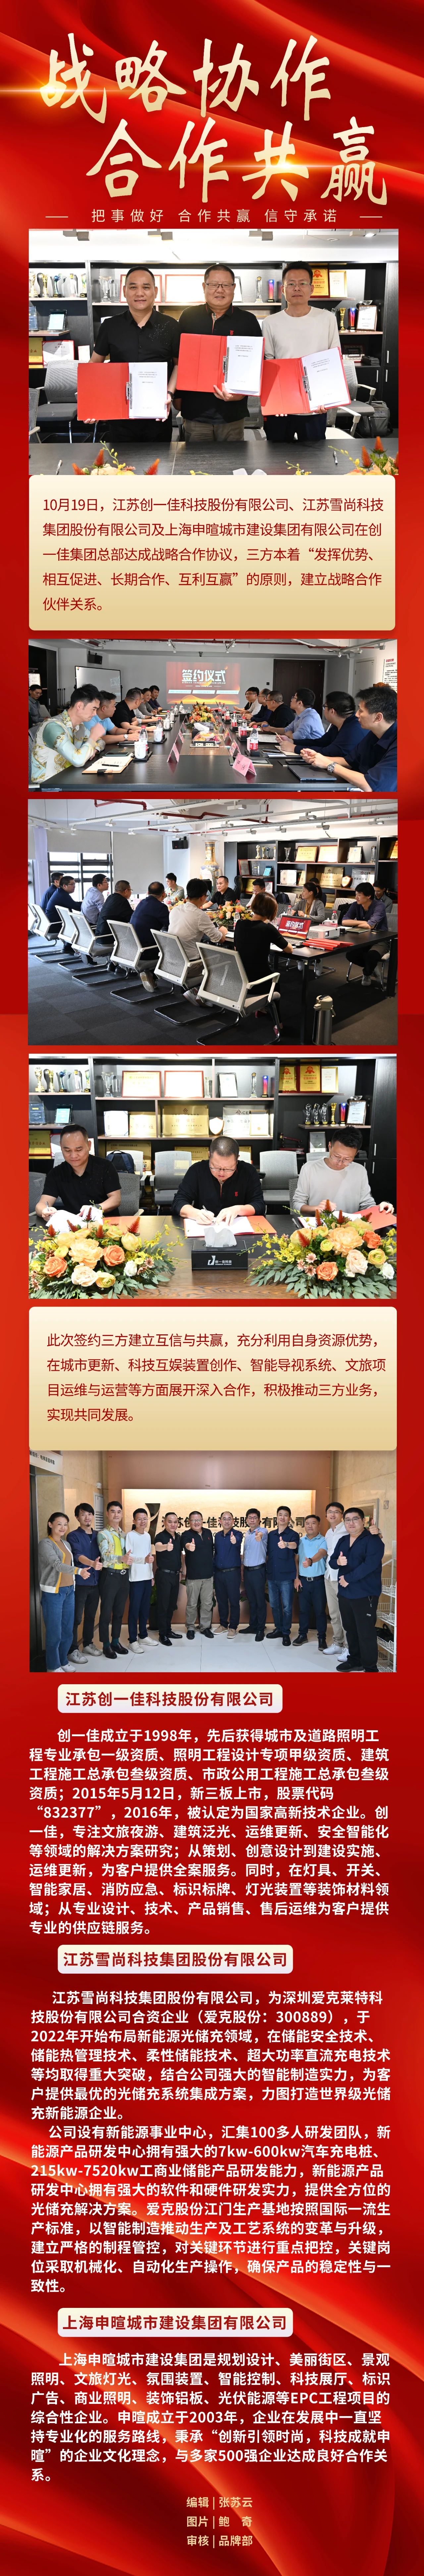 创一佳与江苏雪尚科技及上海申暄集团签订战略合作协议